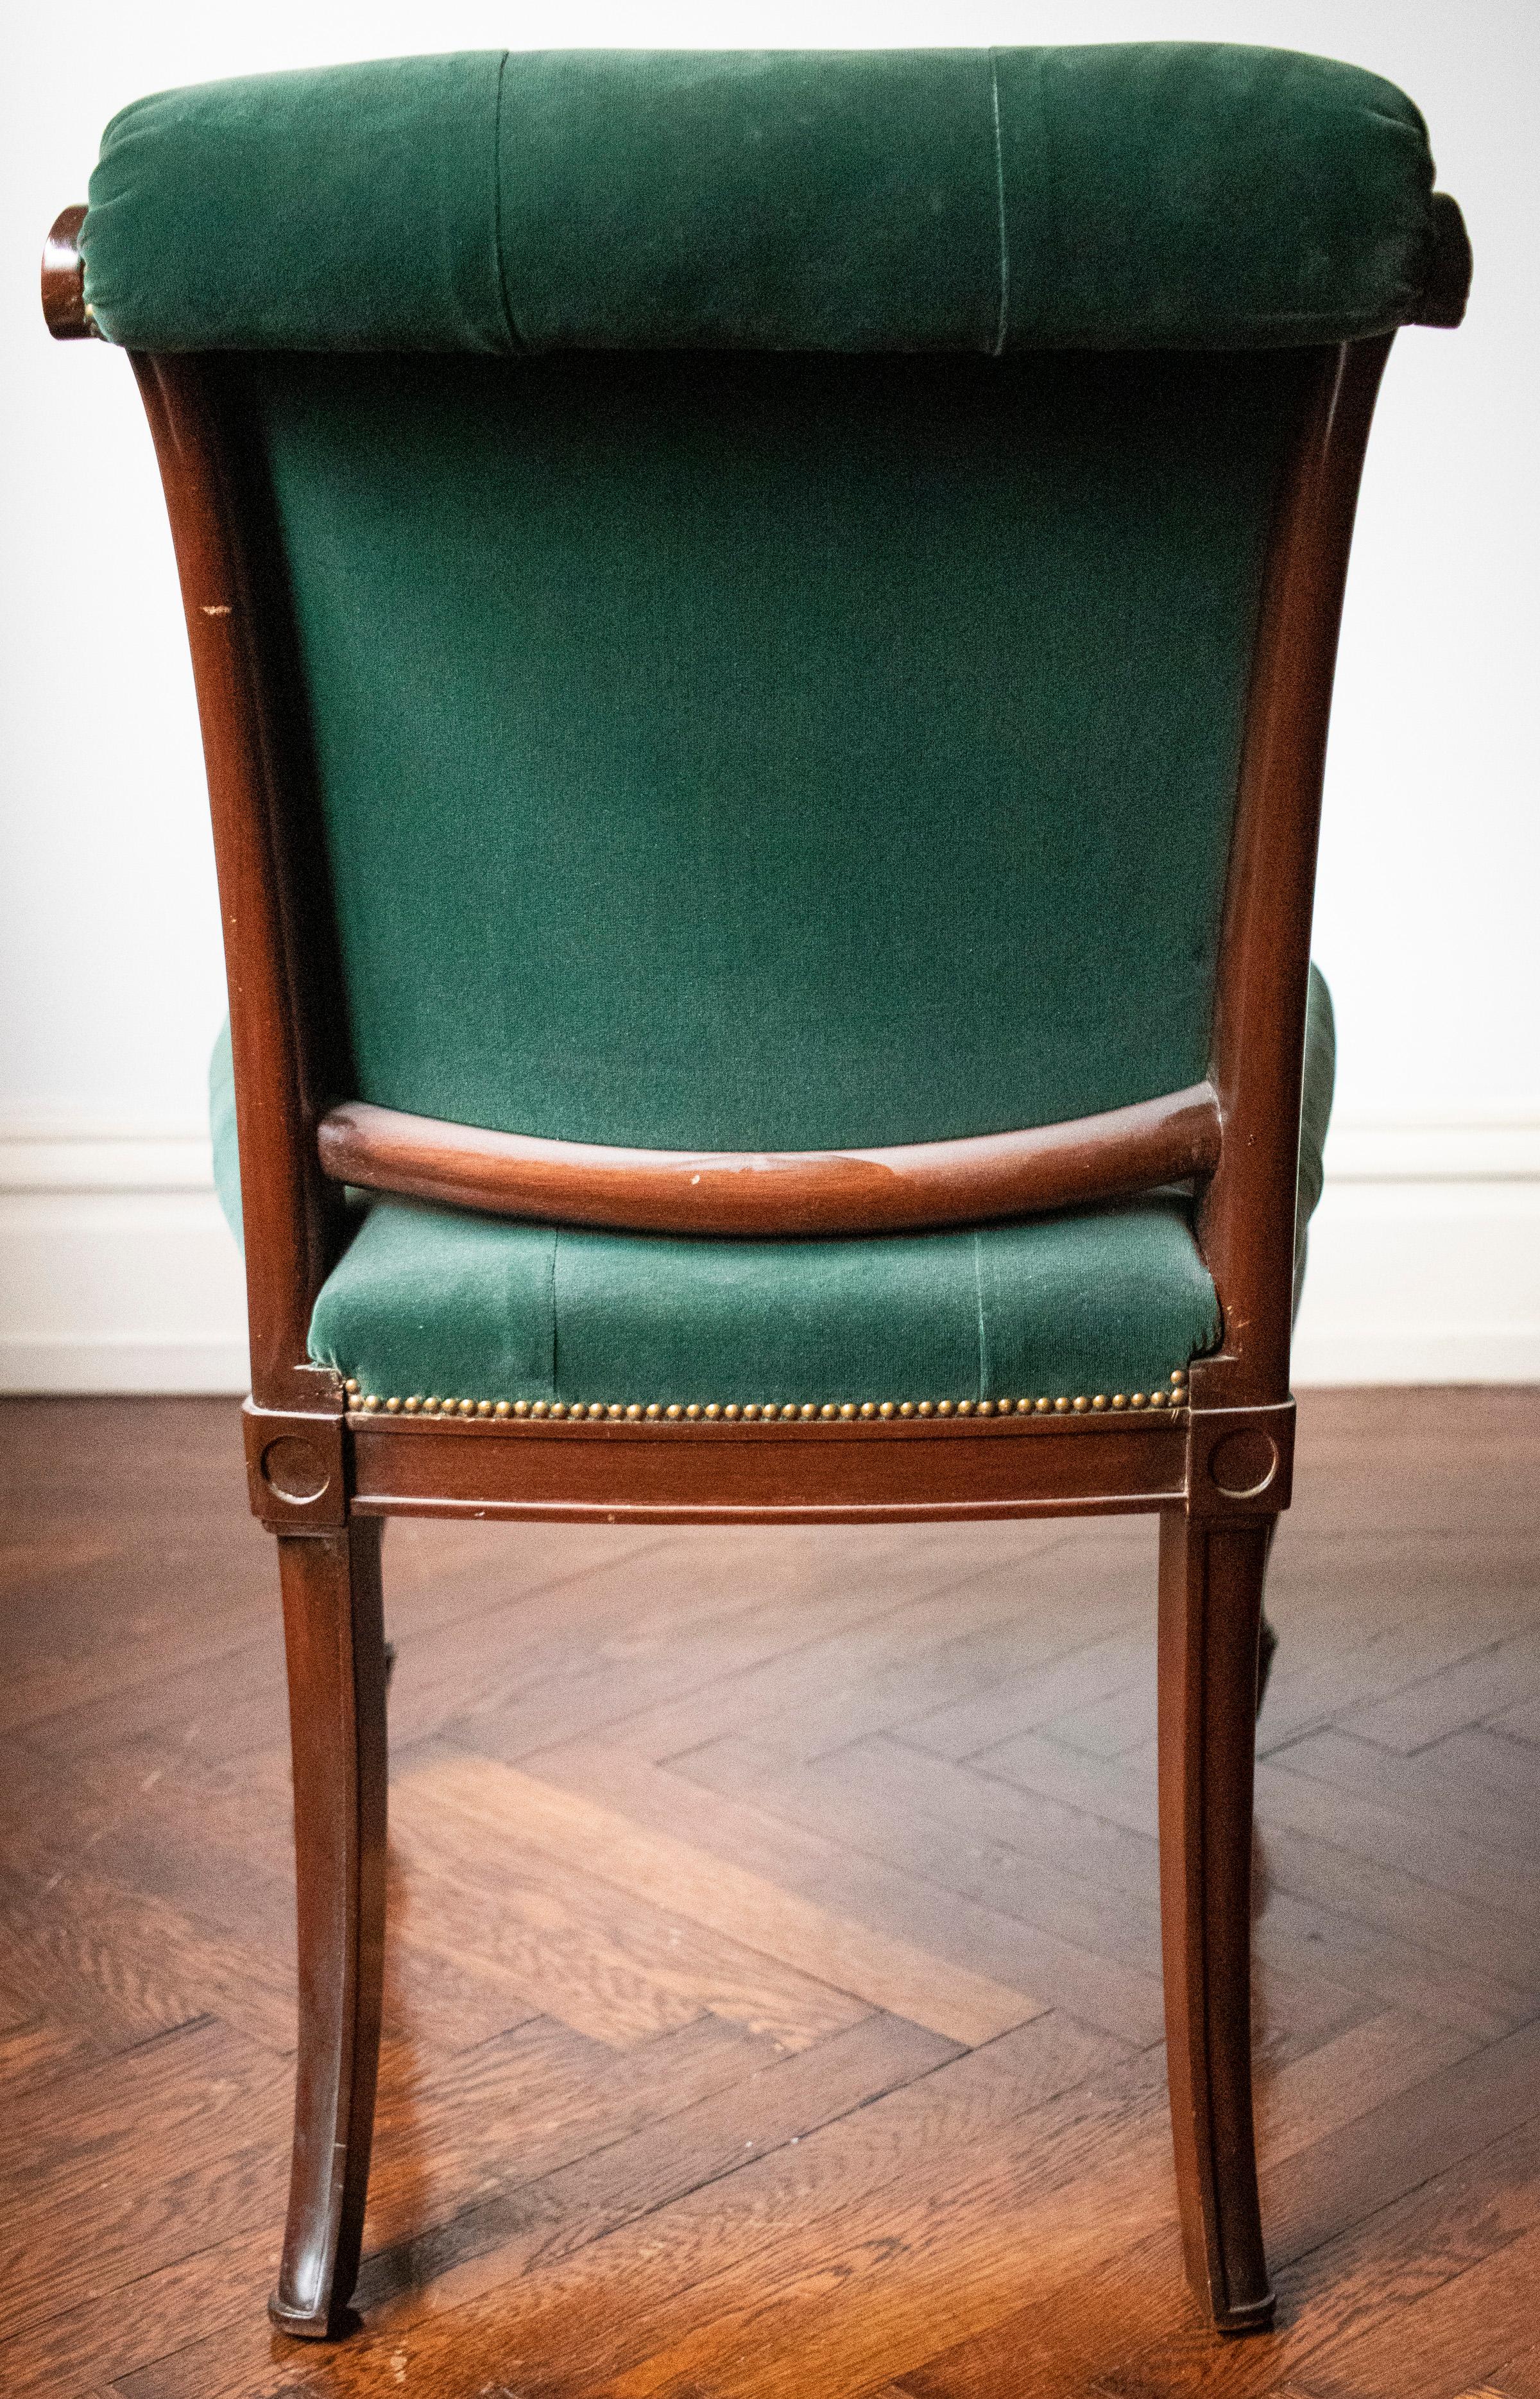 Upholstery English Regency Style Tufted Green Velvet Library Chair